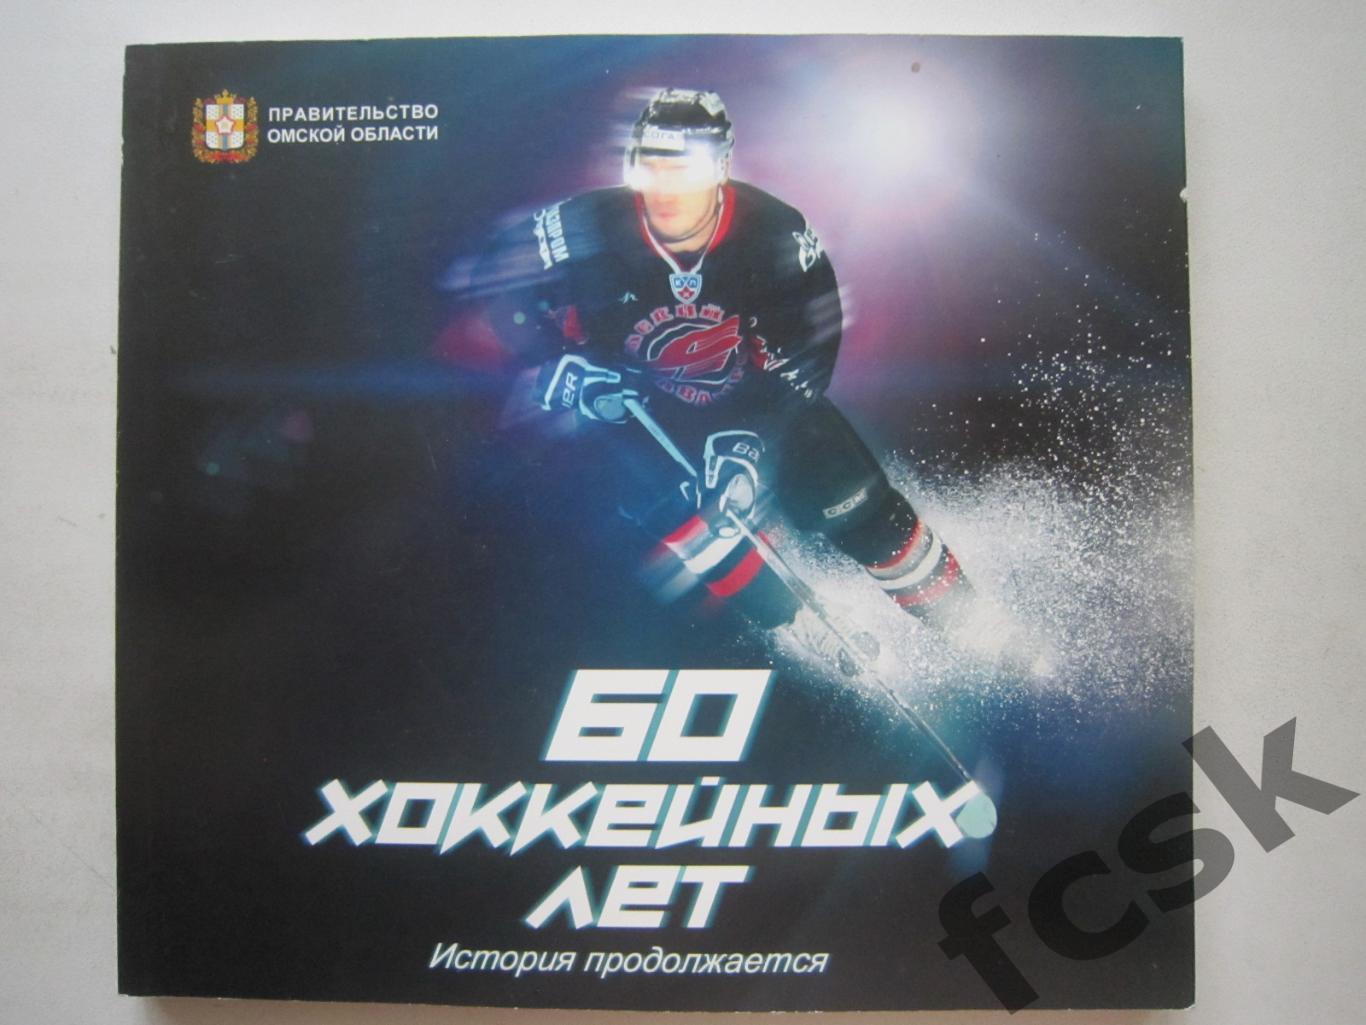 Авангард Омск 60 хоккейных лет История продолжается (ф3)